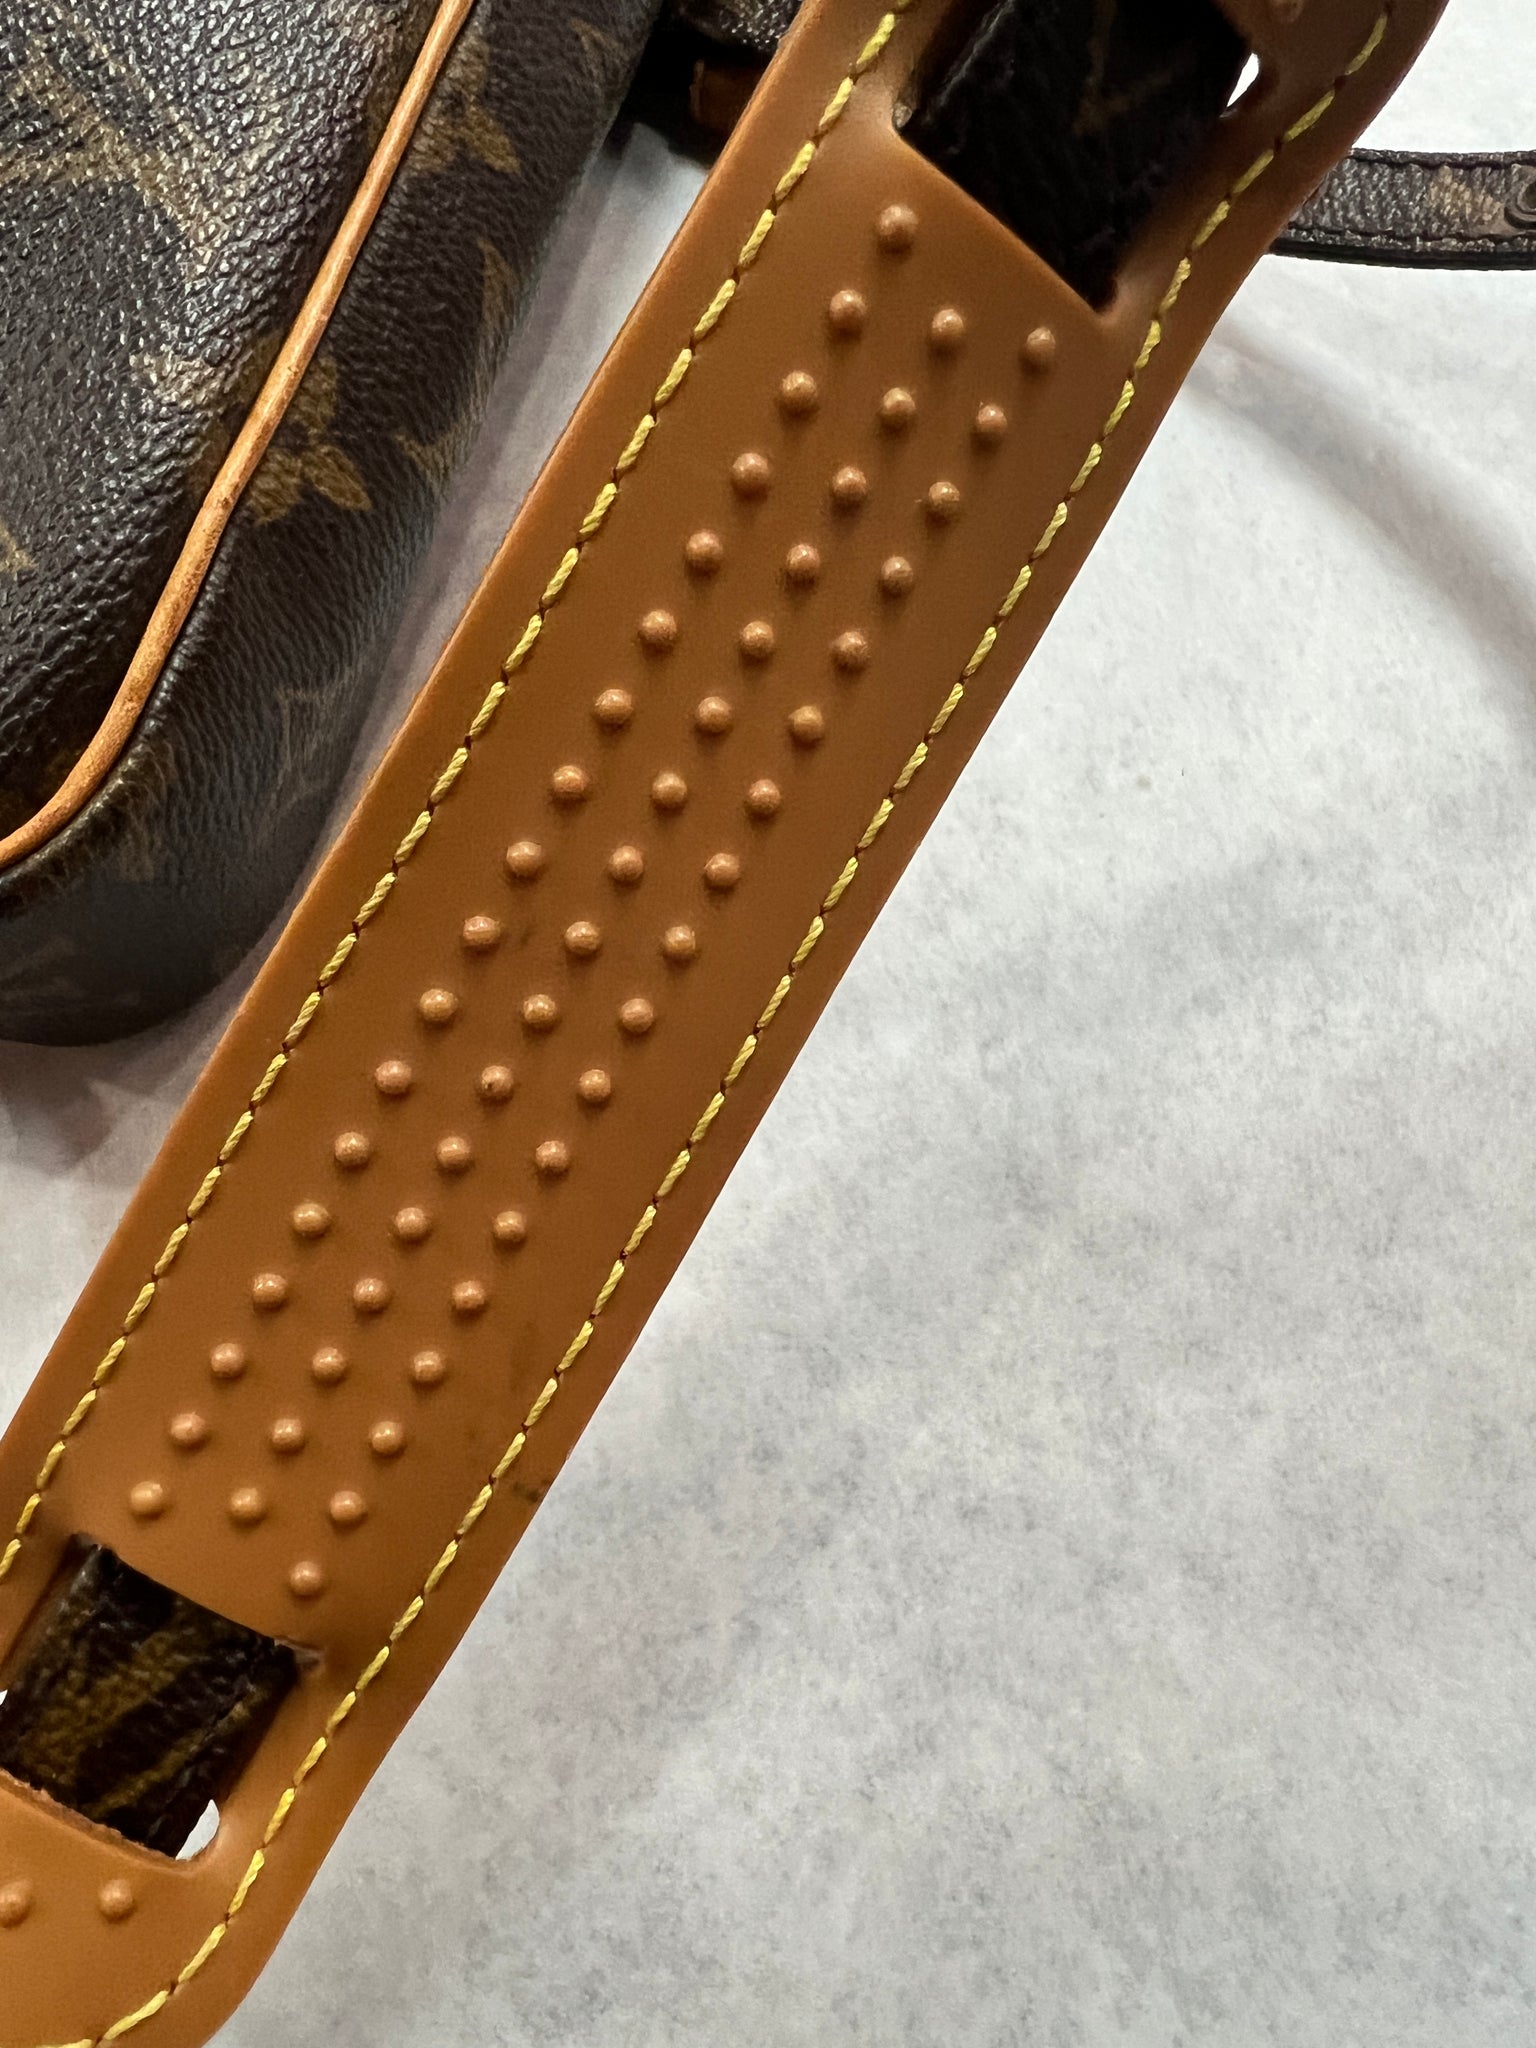 Louis Vuitton Marly Handbag 398752